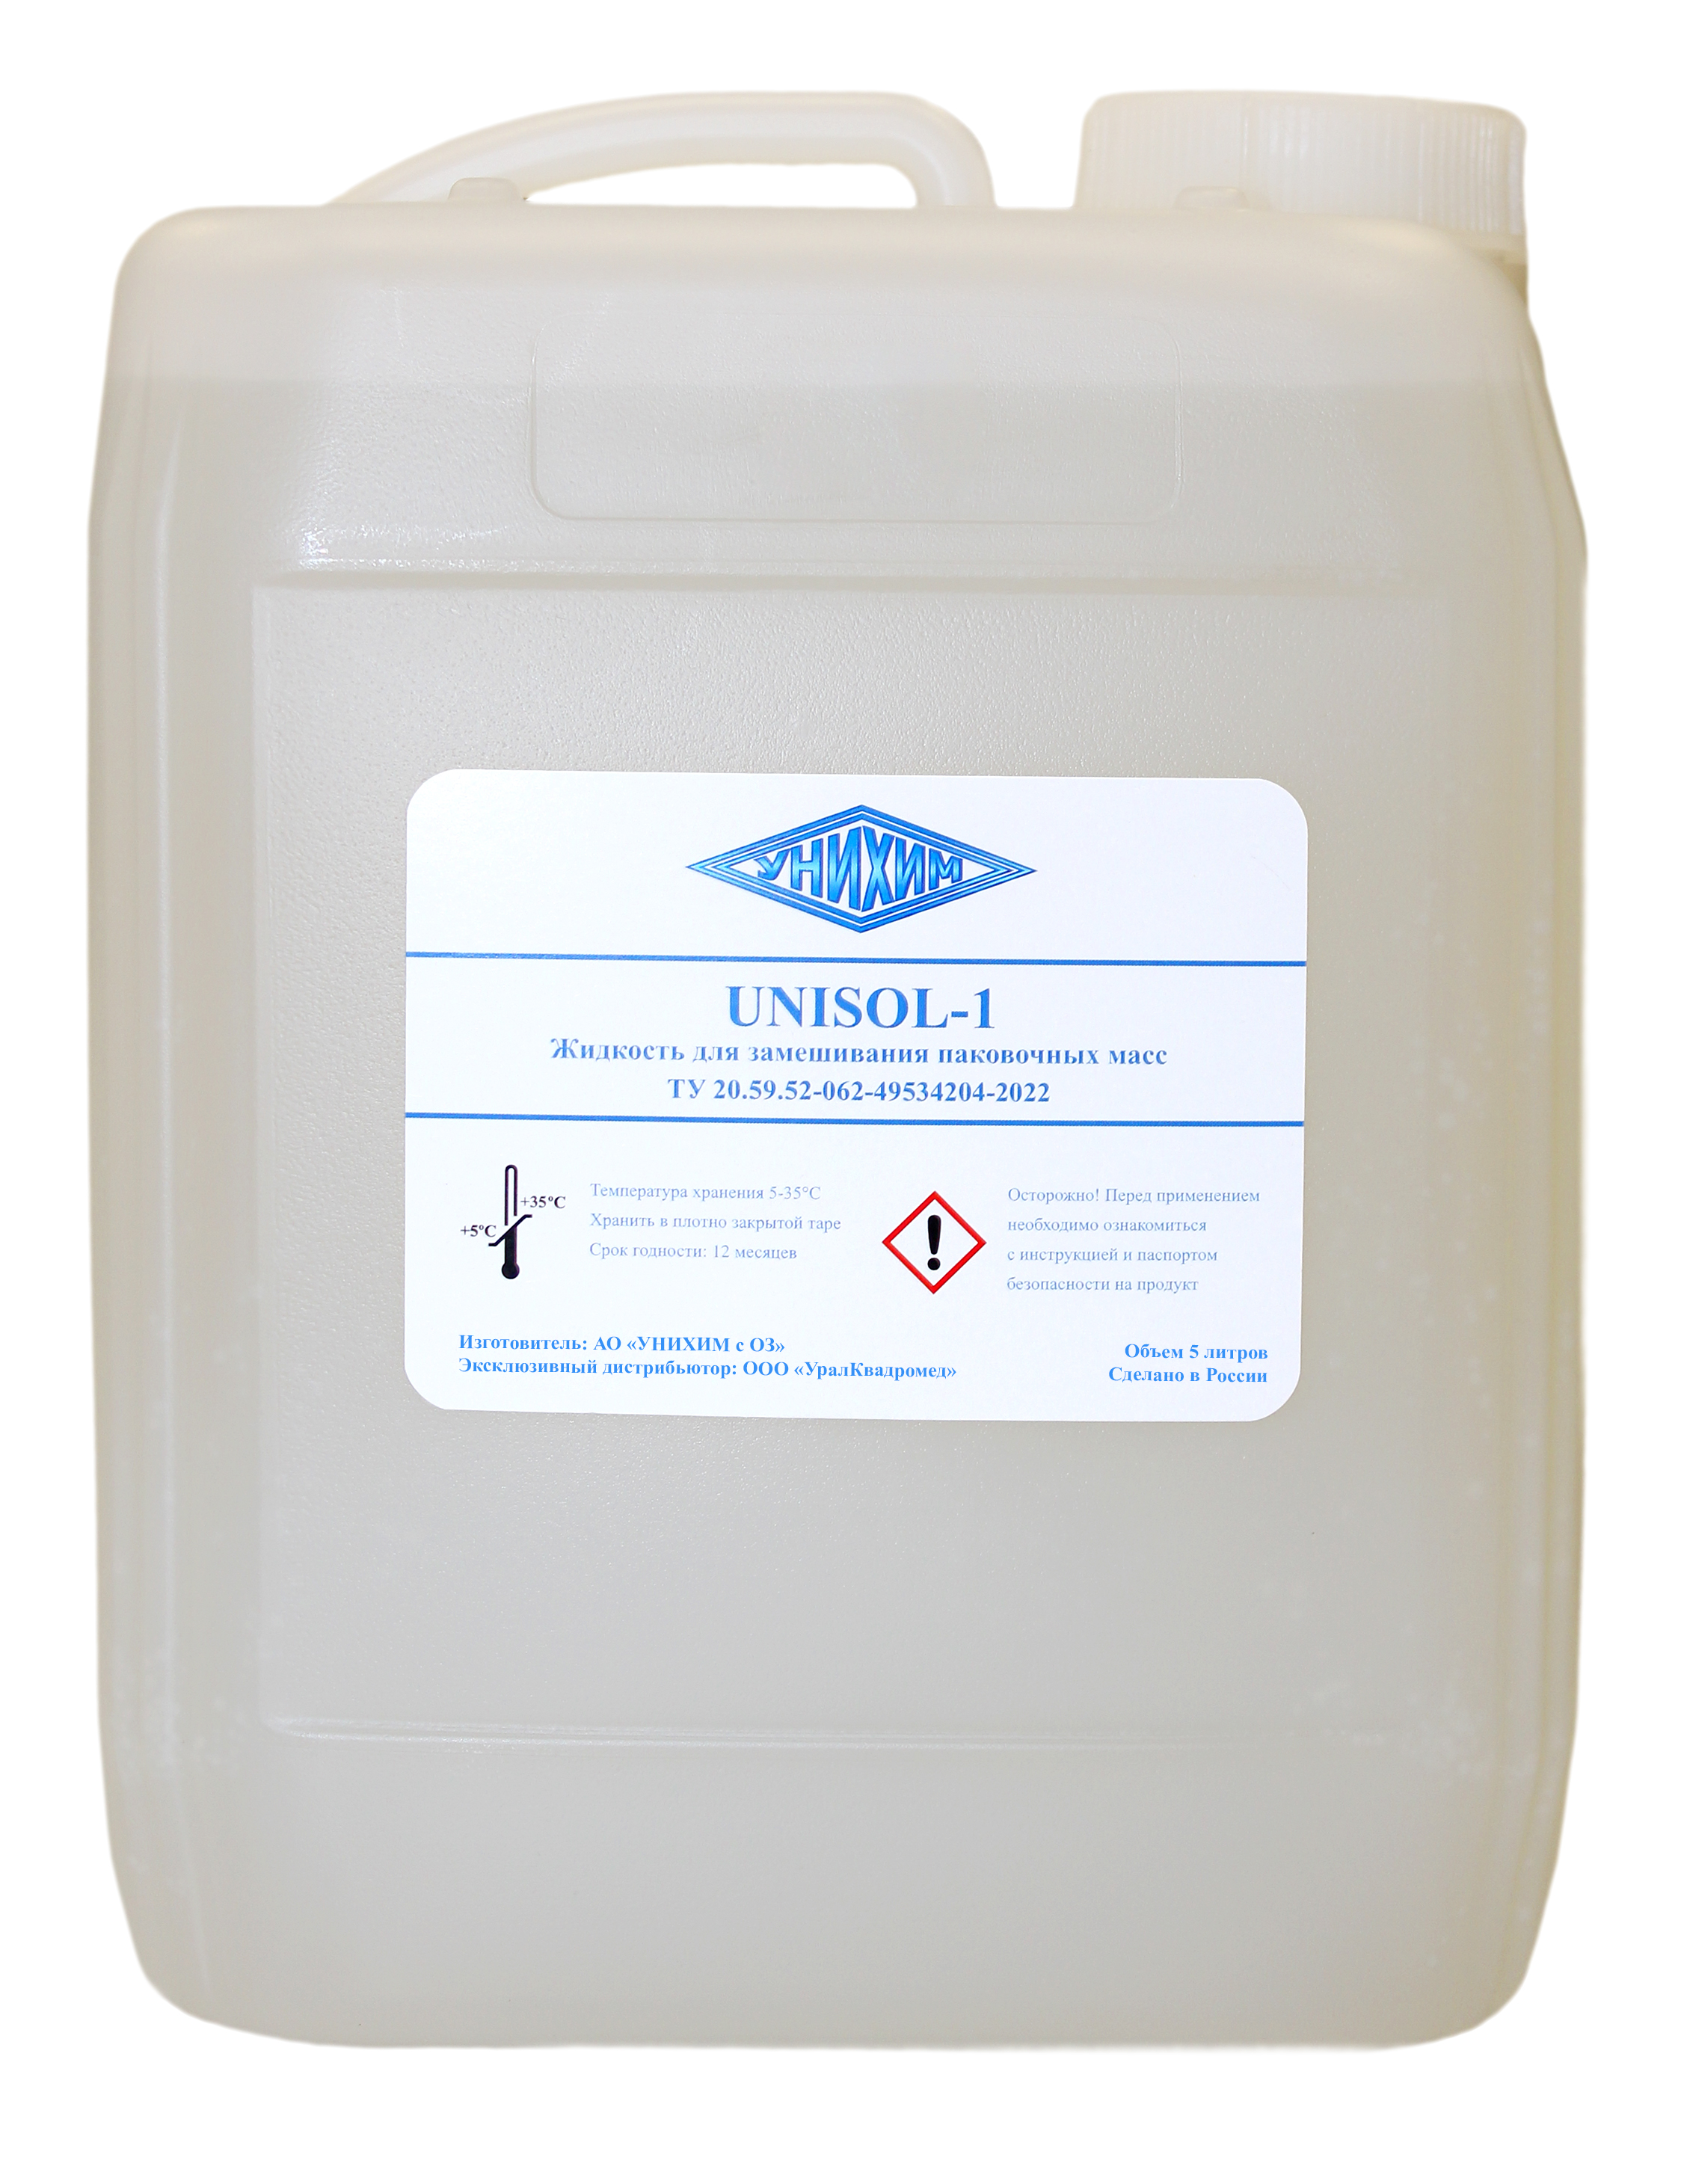 Жидкость UNISOL-1 для паковочной массы (5 л) УНИХИМ 00-00019646